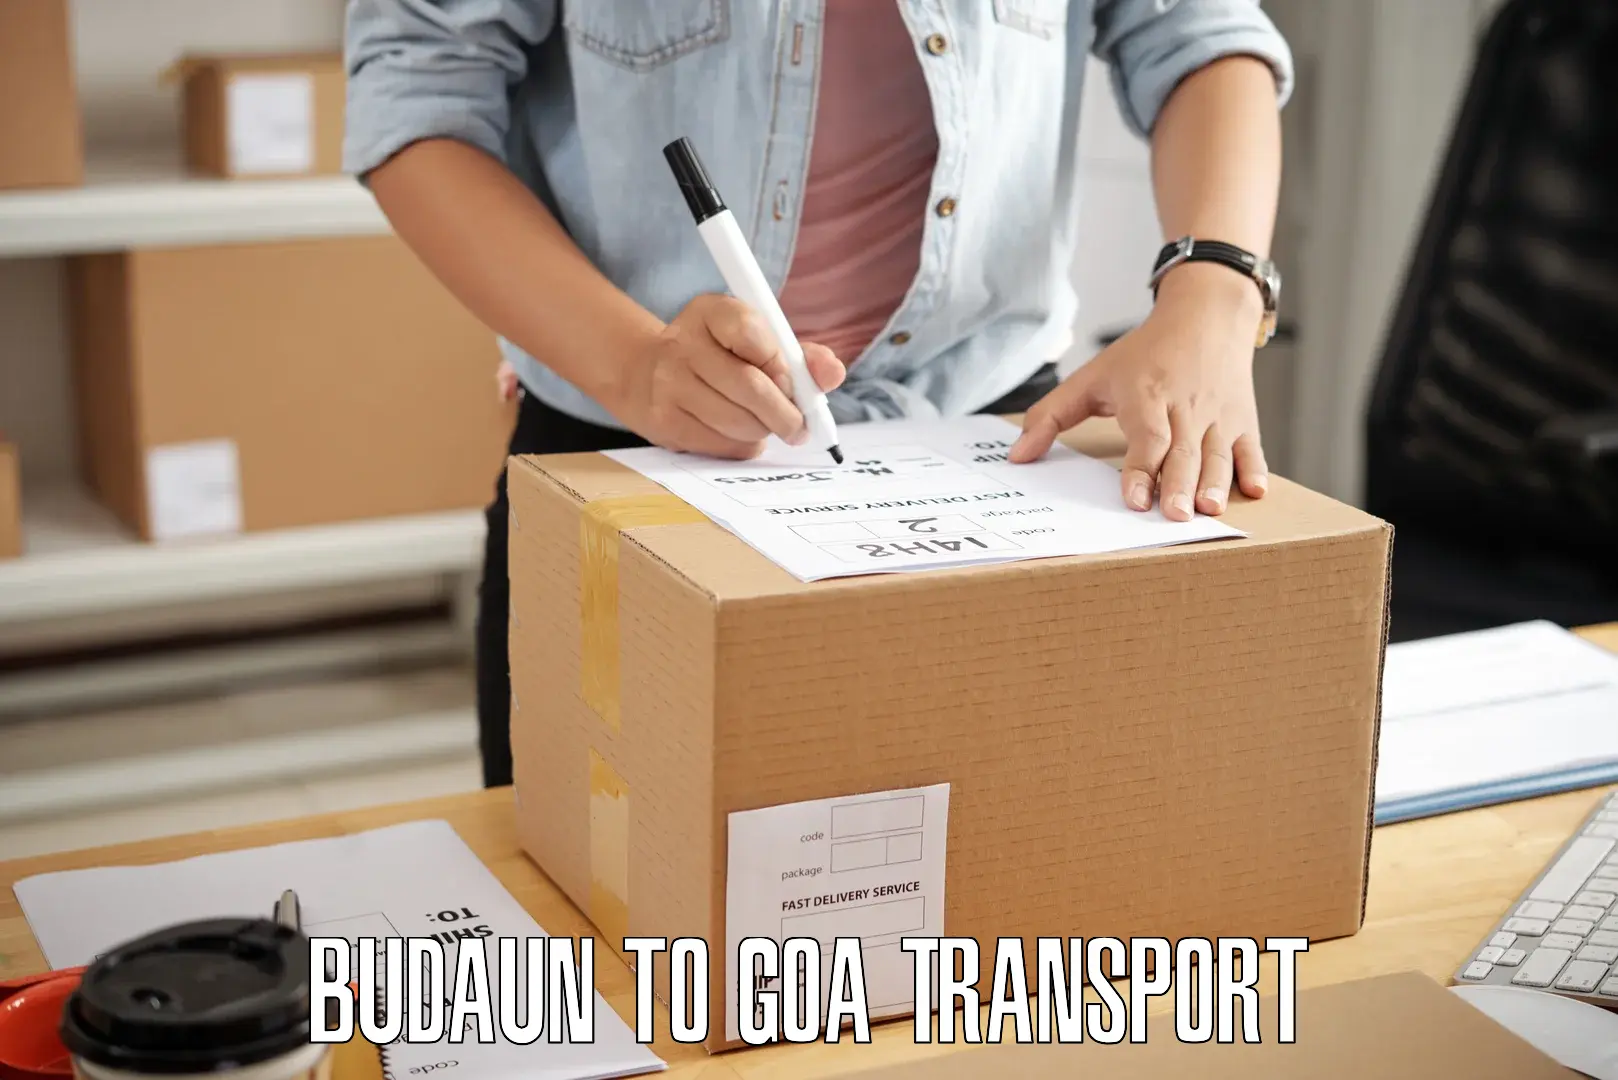 Bike shipping service Budaun to Vasco da Gama